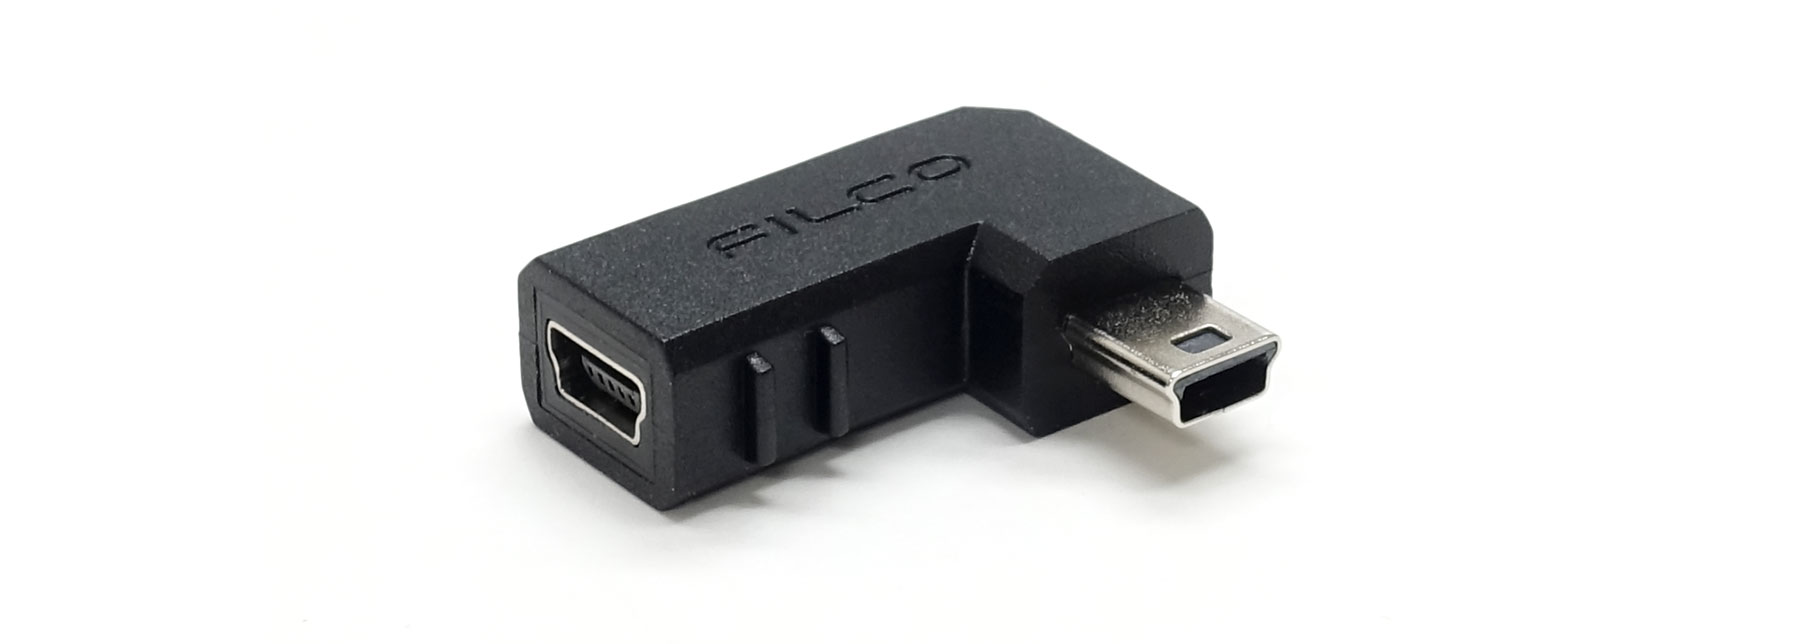 USBケーブル・USBコネクタなど02